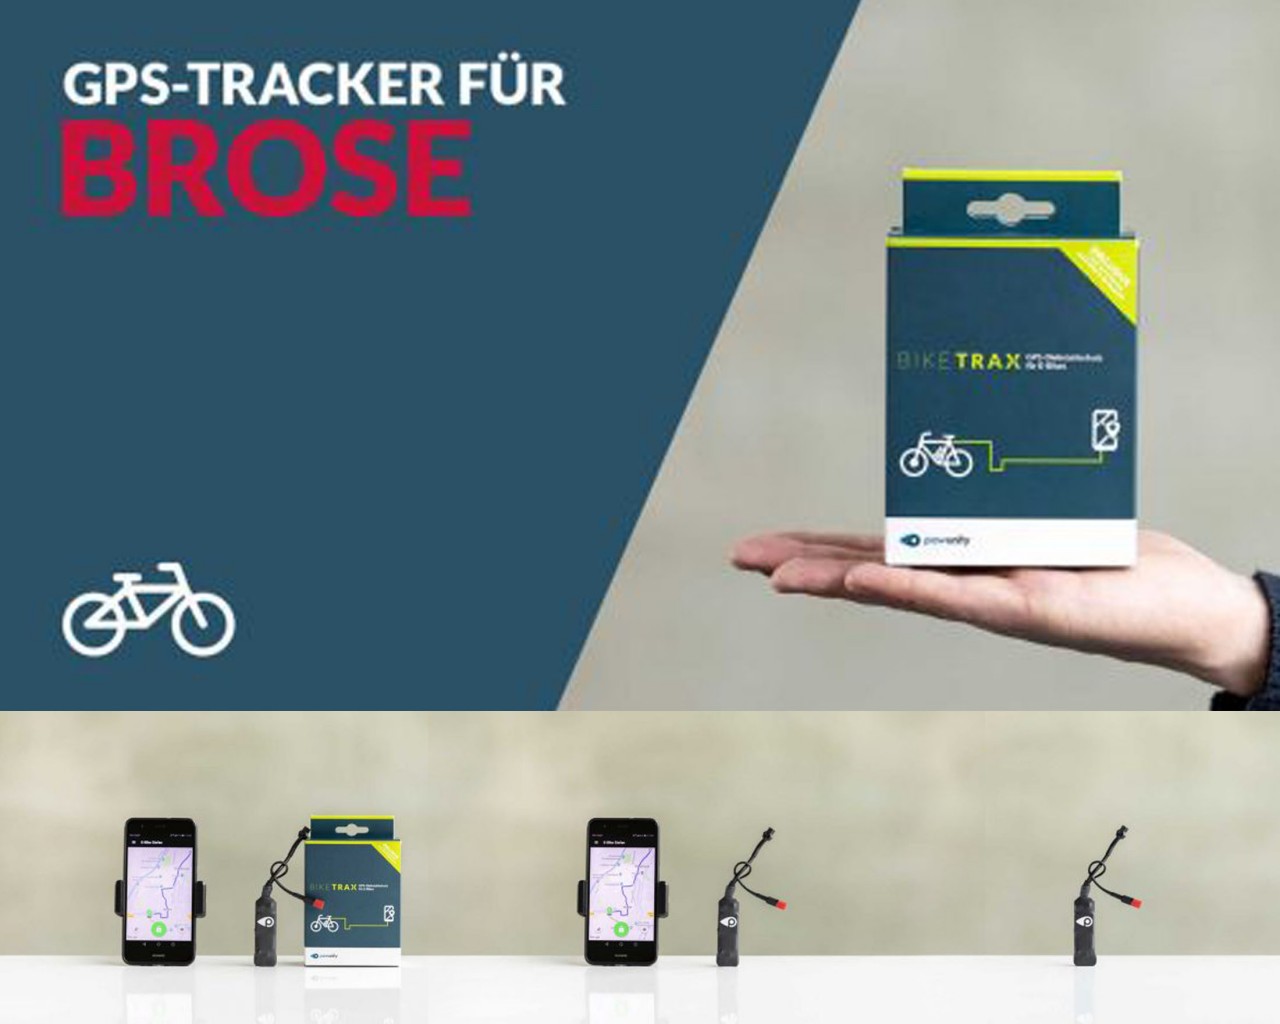 PowUnity BikeTrax GPS Tracker für E-Bikes - Specialized Brose